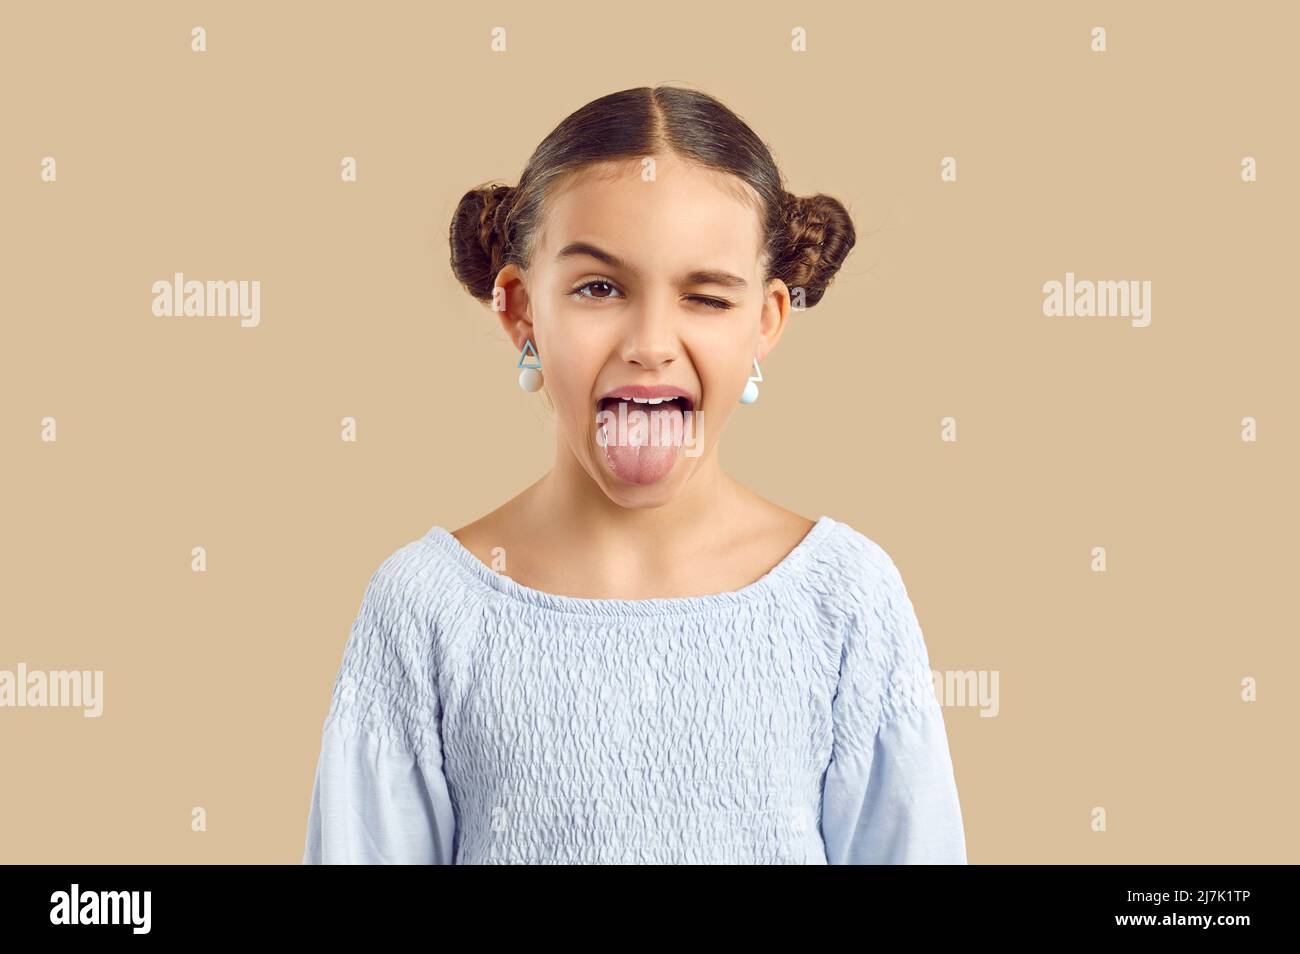 Studioaufnahme eines lustigen, frechen kleinen Mädchens, das ihre Zunge herausstreckt und ihr Auge winkend macht Stockfoto